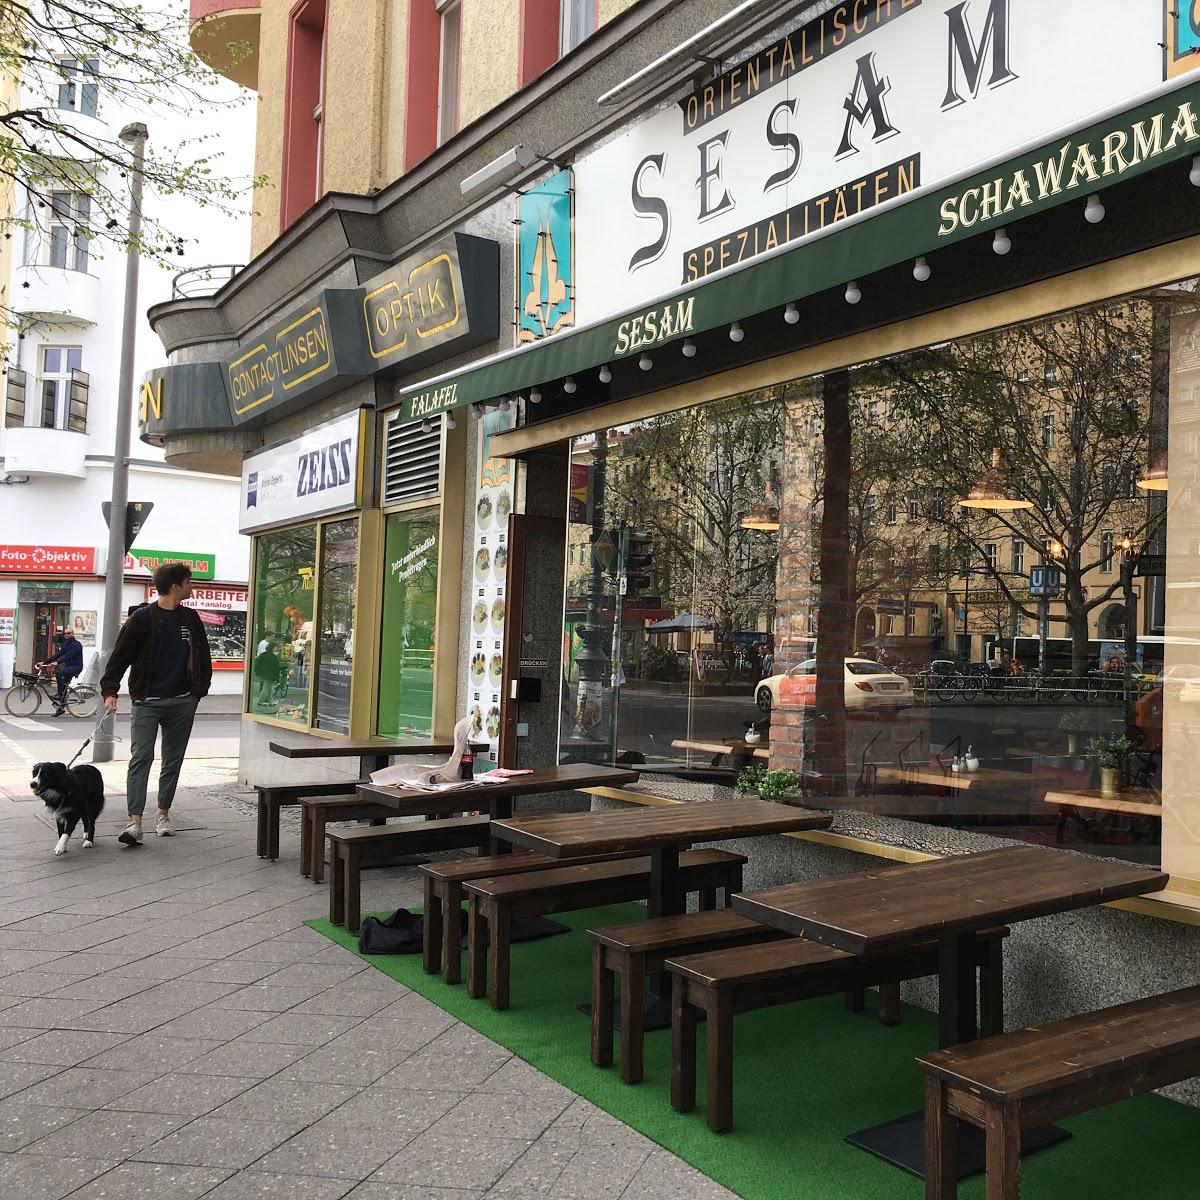 Restaurant "SESAM Orientalische Spezialitäten" in Berlin